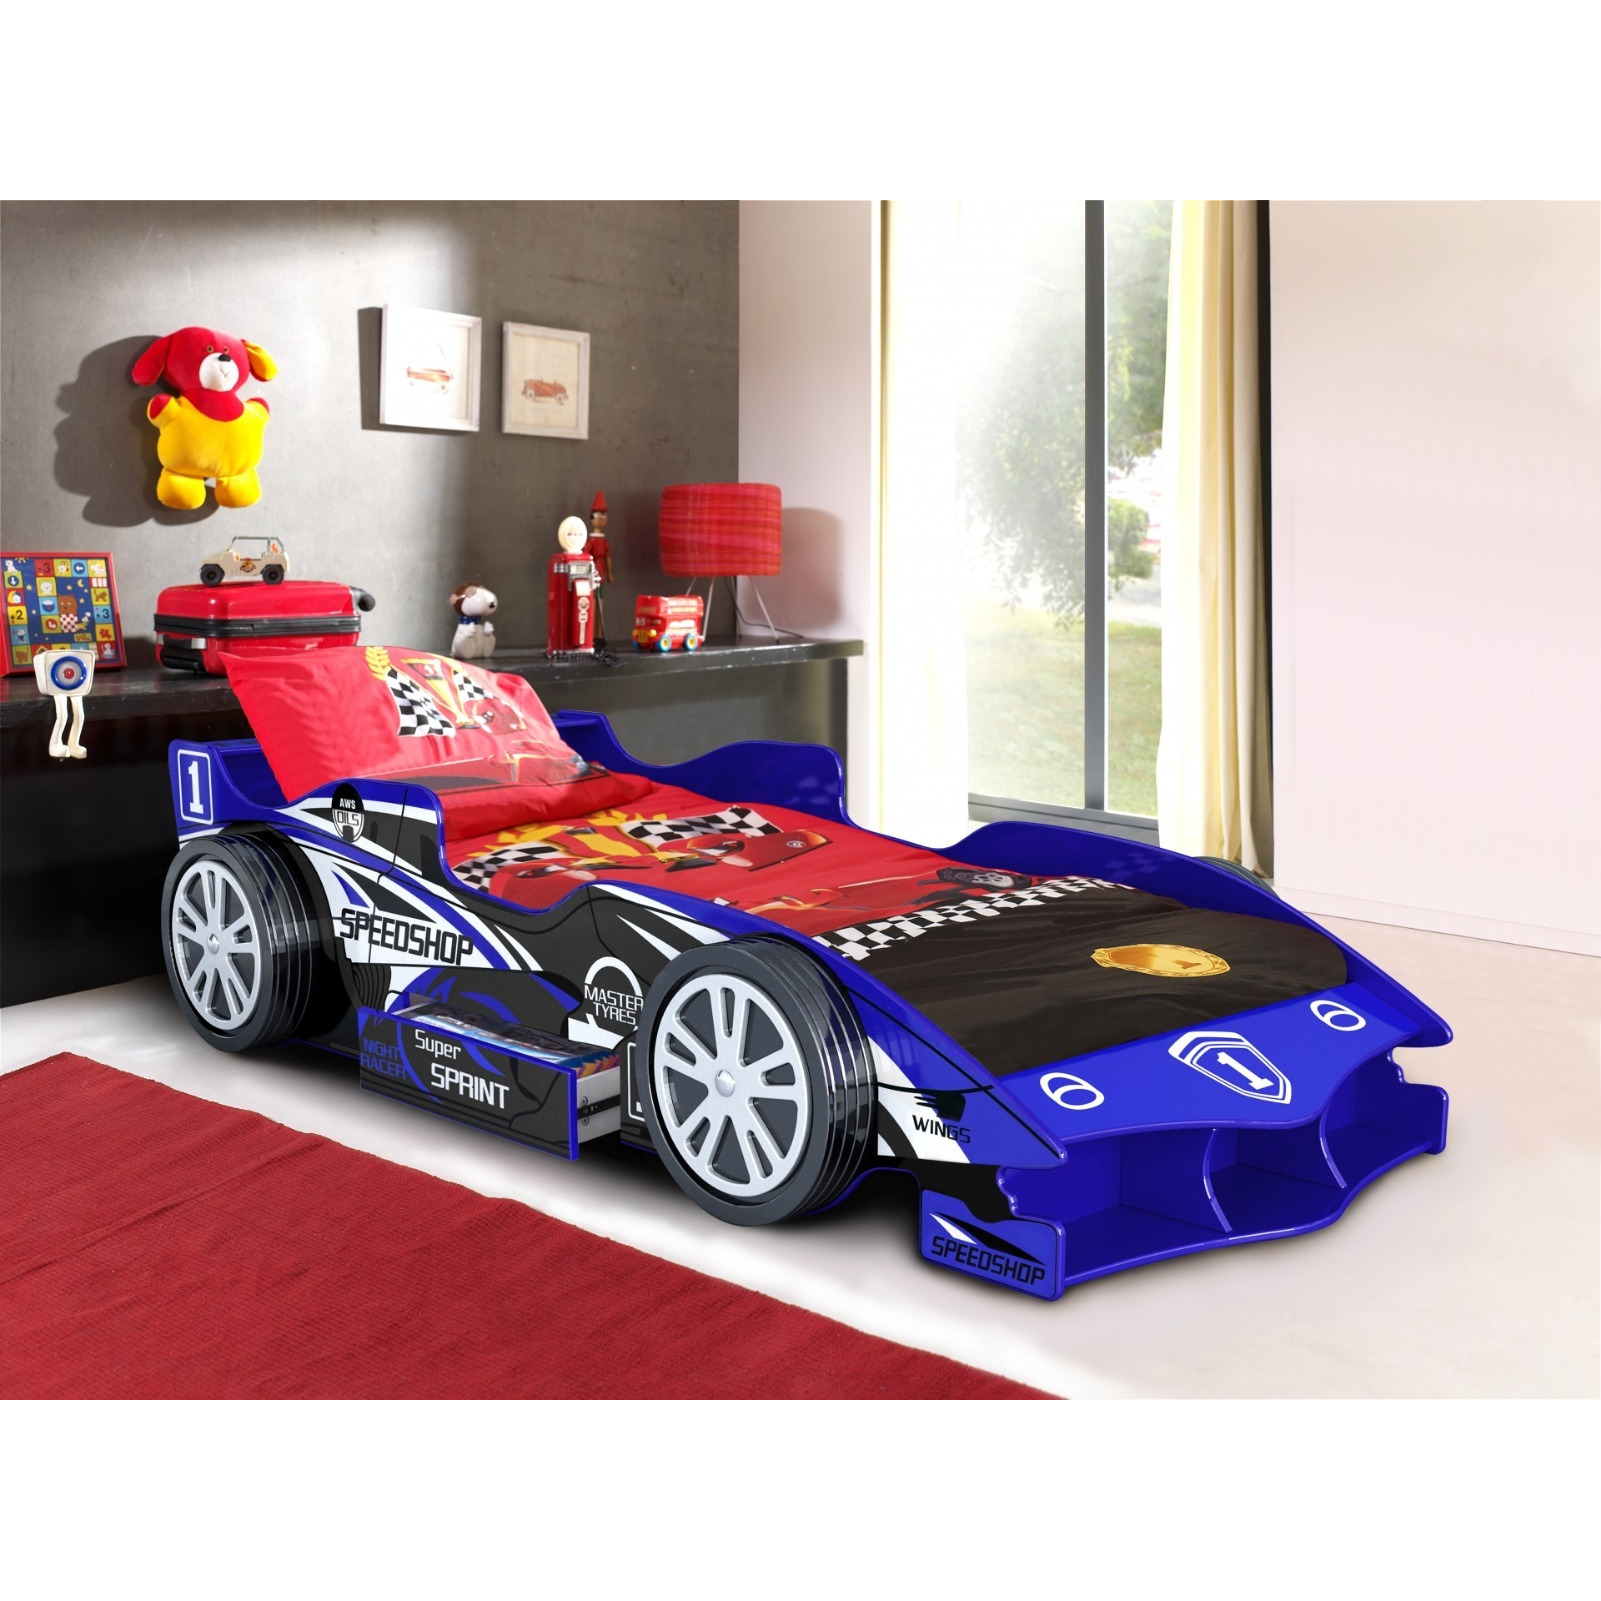 Artisan Speedracer Car Bed Frame Blue - image 1